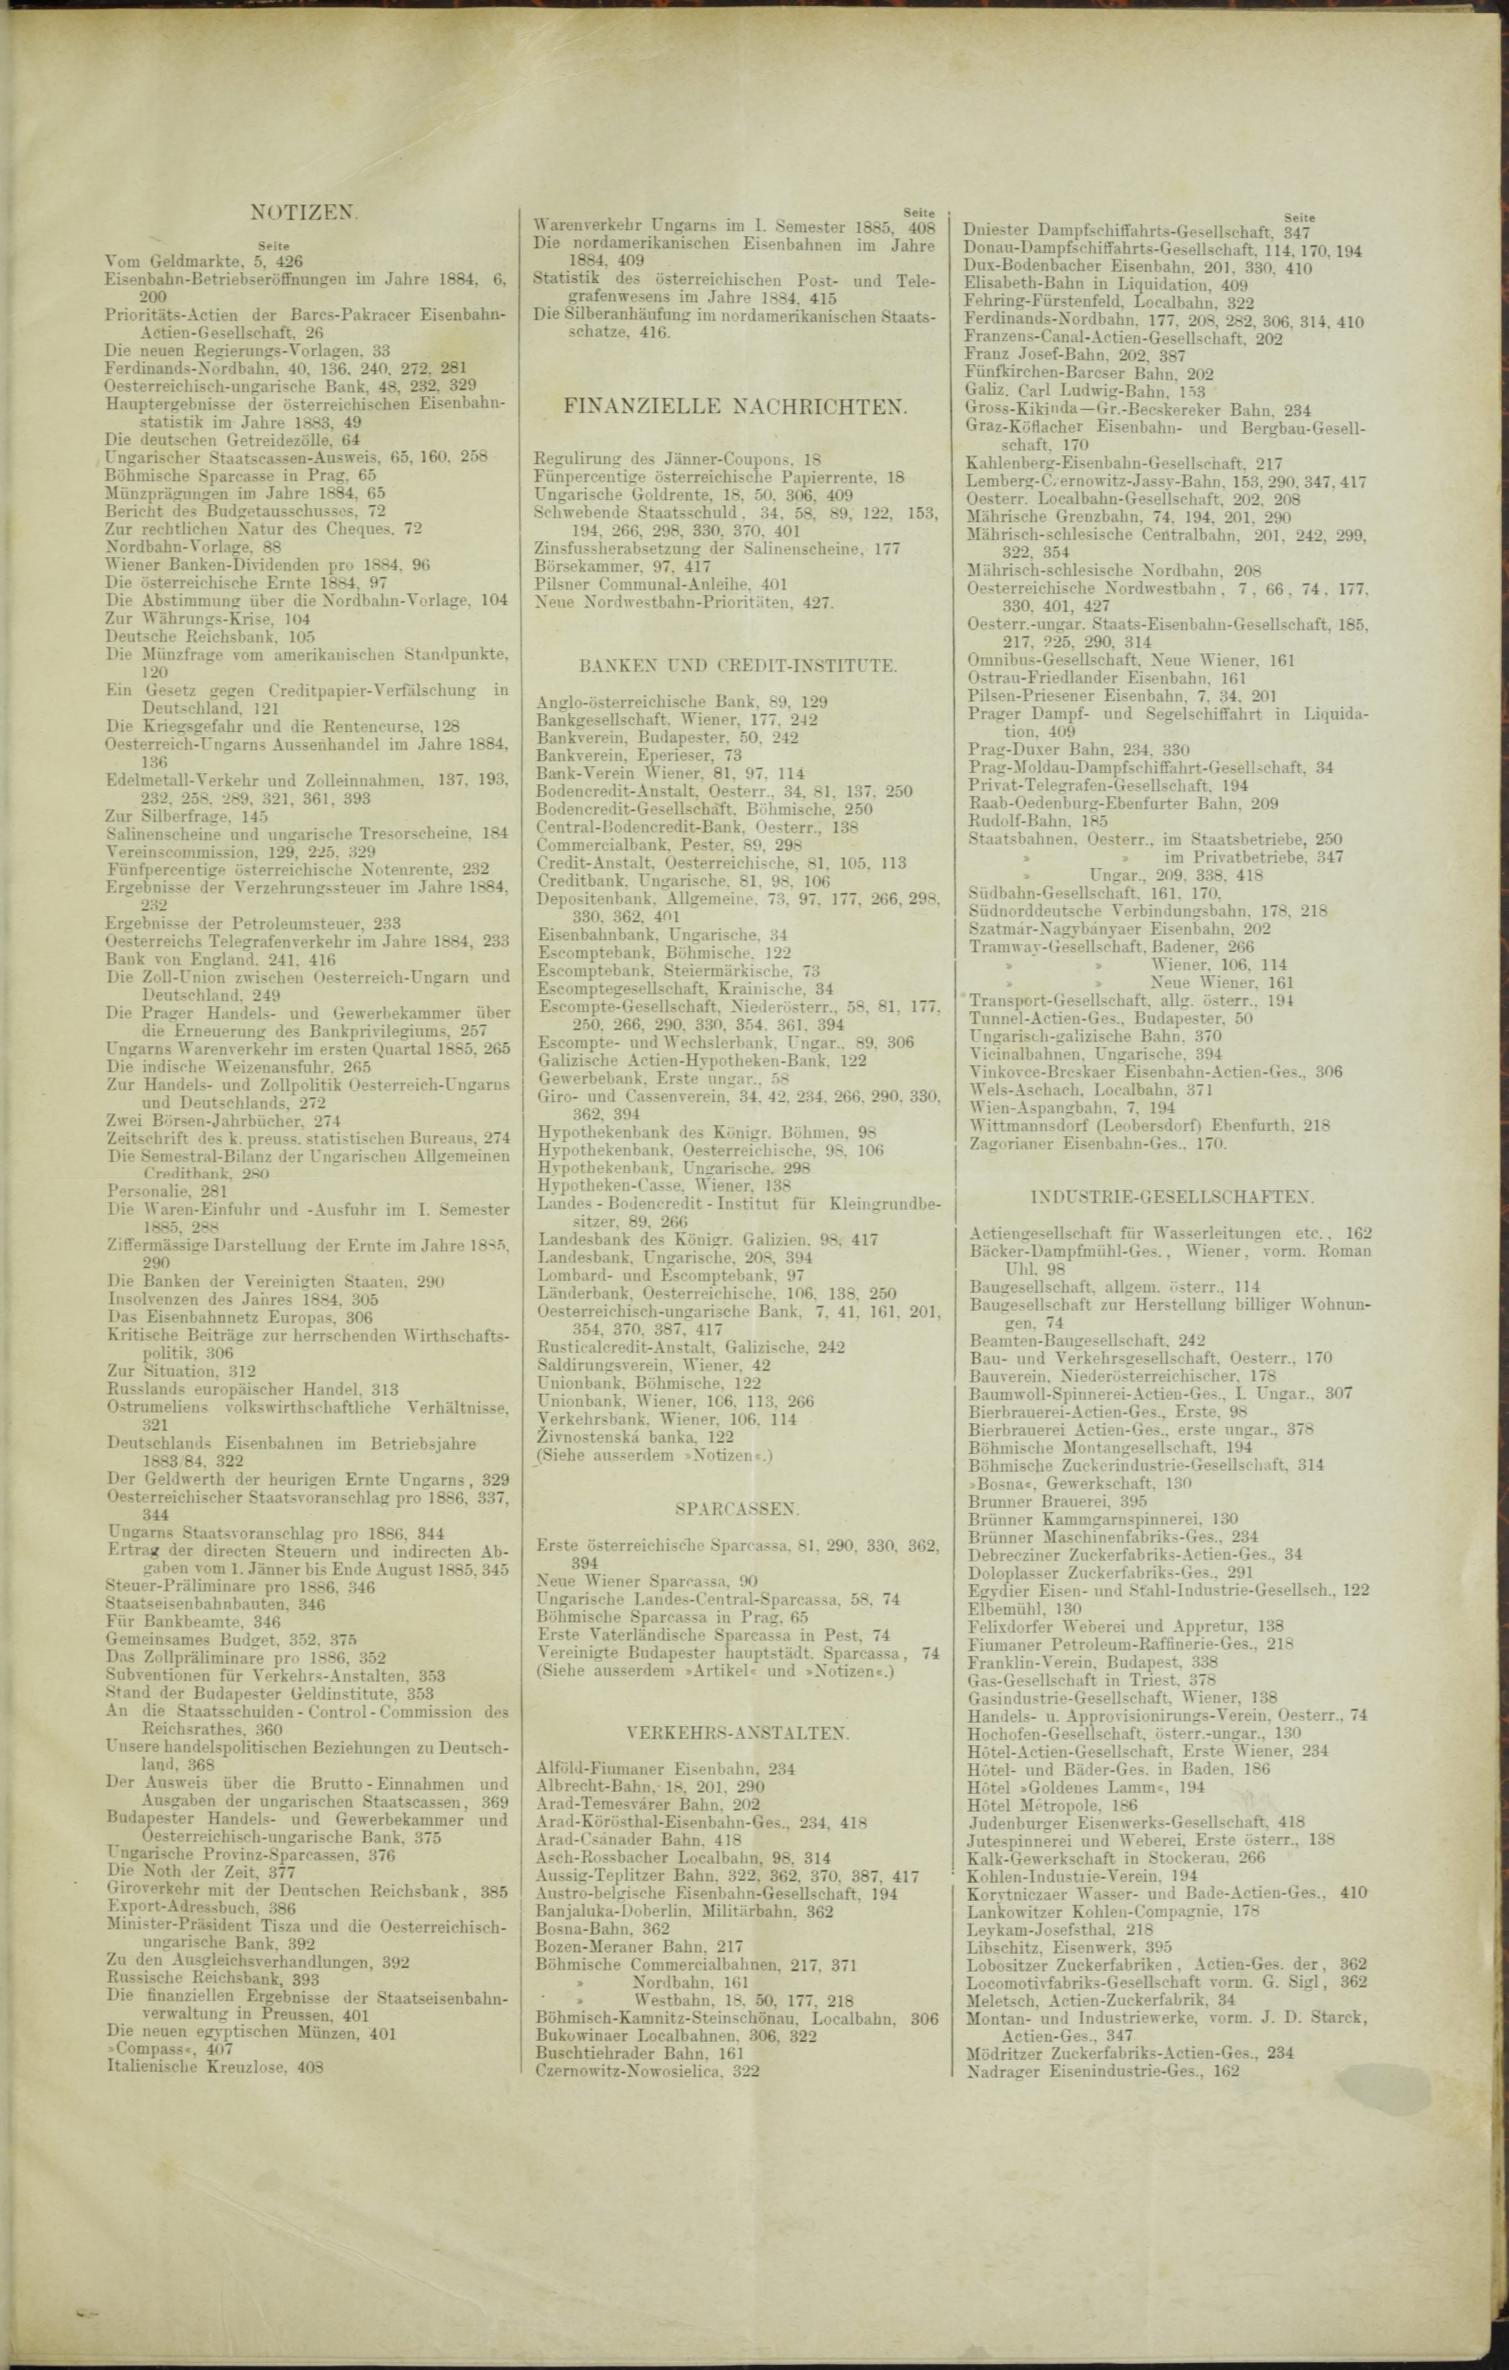 Der Tresor 10.12.1885 - Seite 11